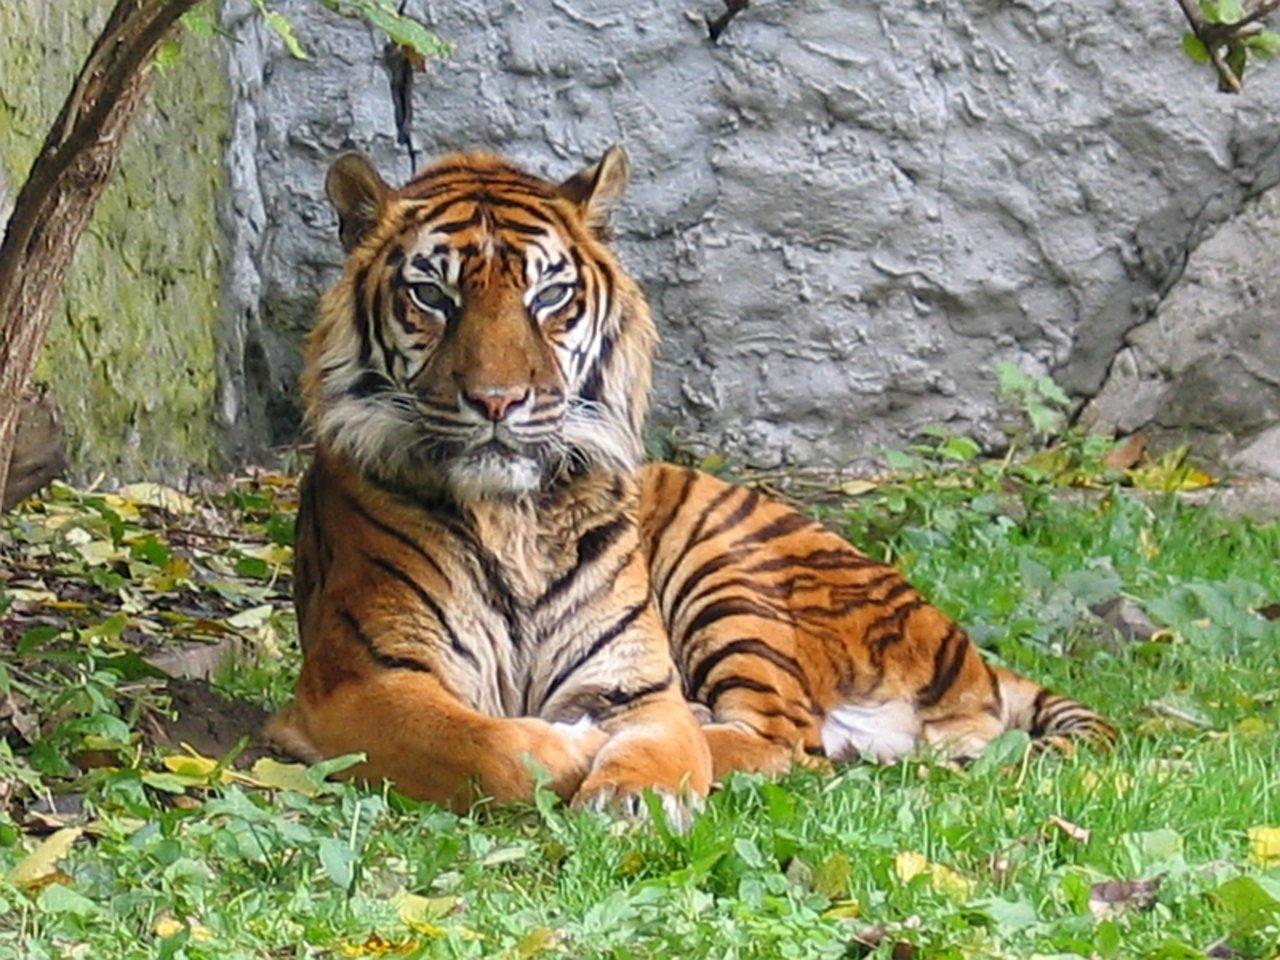 Sumatra-Tiger gehören zu den kleinsten Tigern. (Bild Monika Betley)